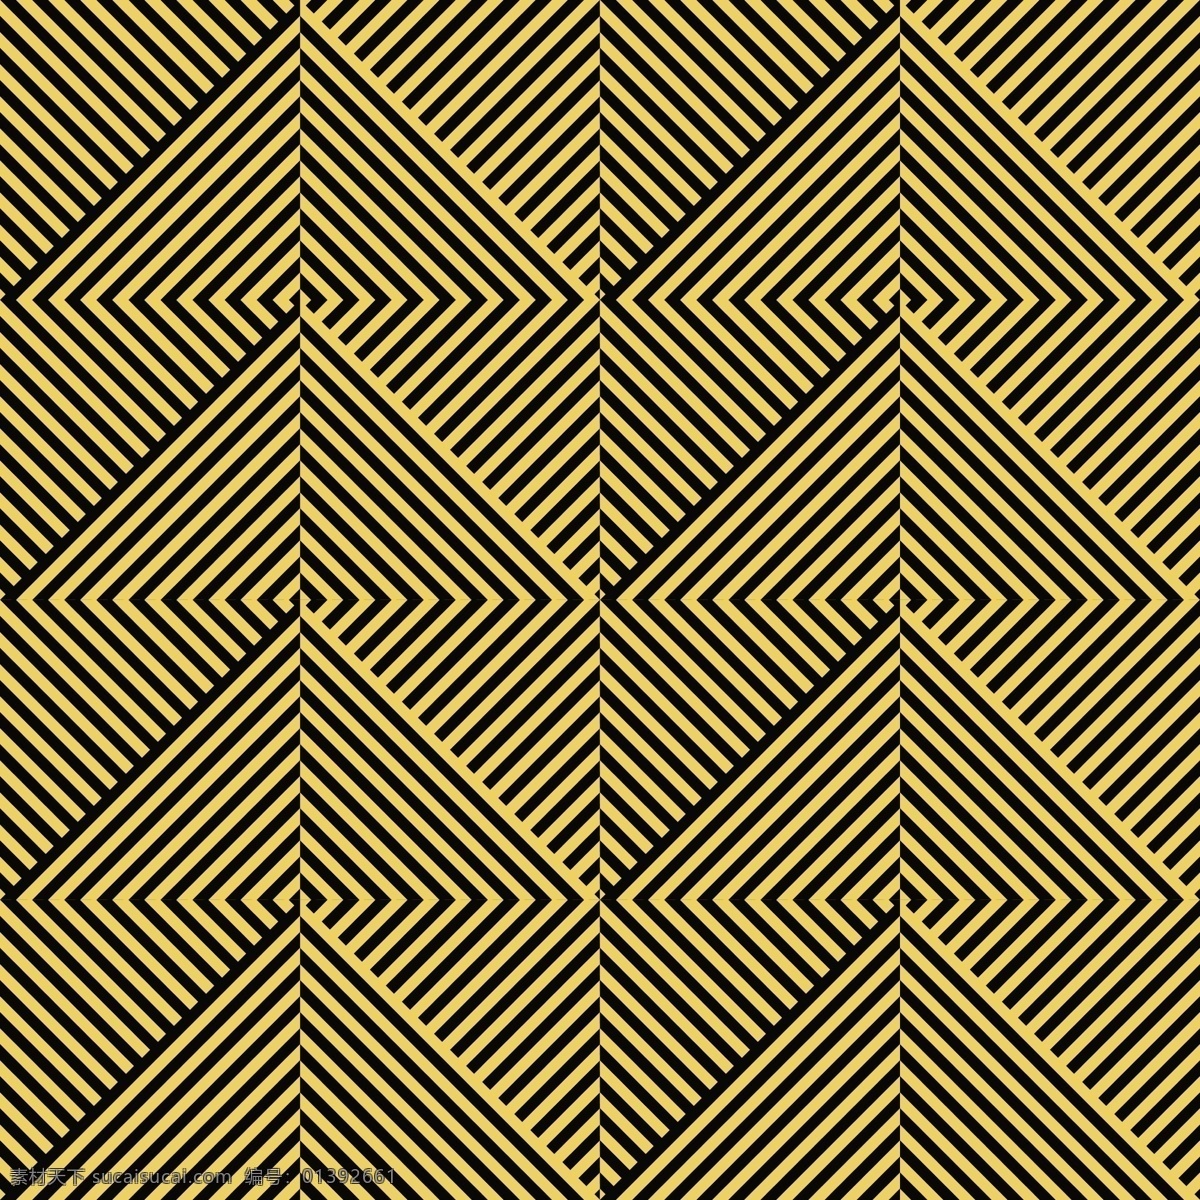 斜线 金色 图形 连续 背景 矢量 三角形 条纹 填充 底纹 纹理